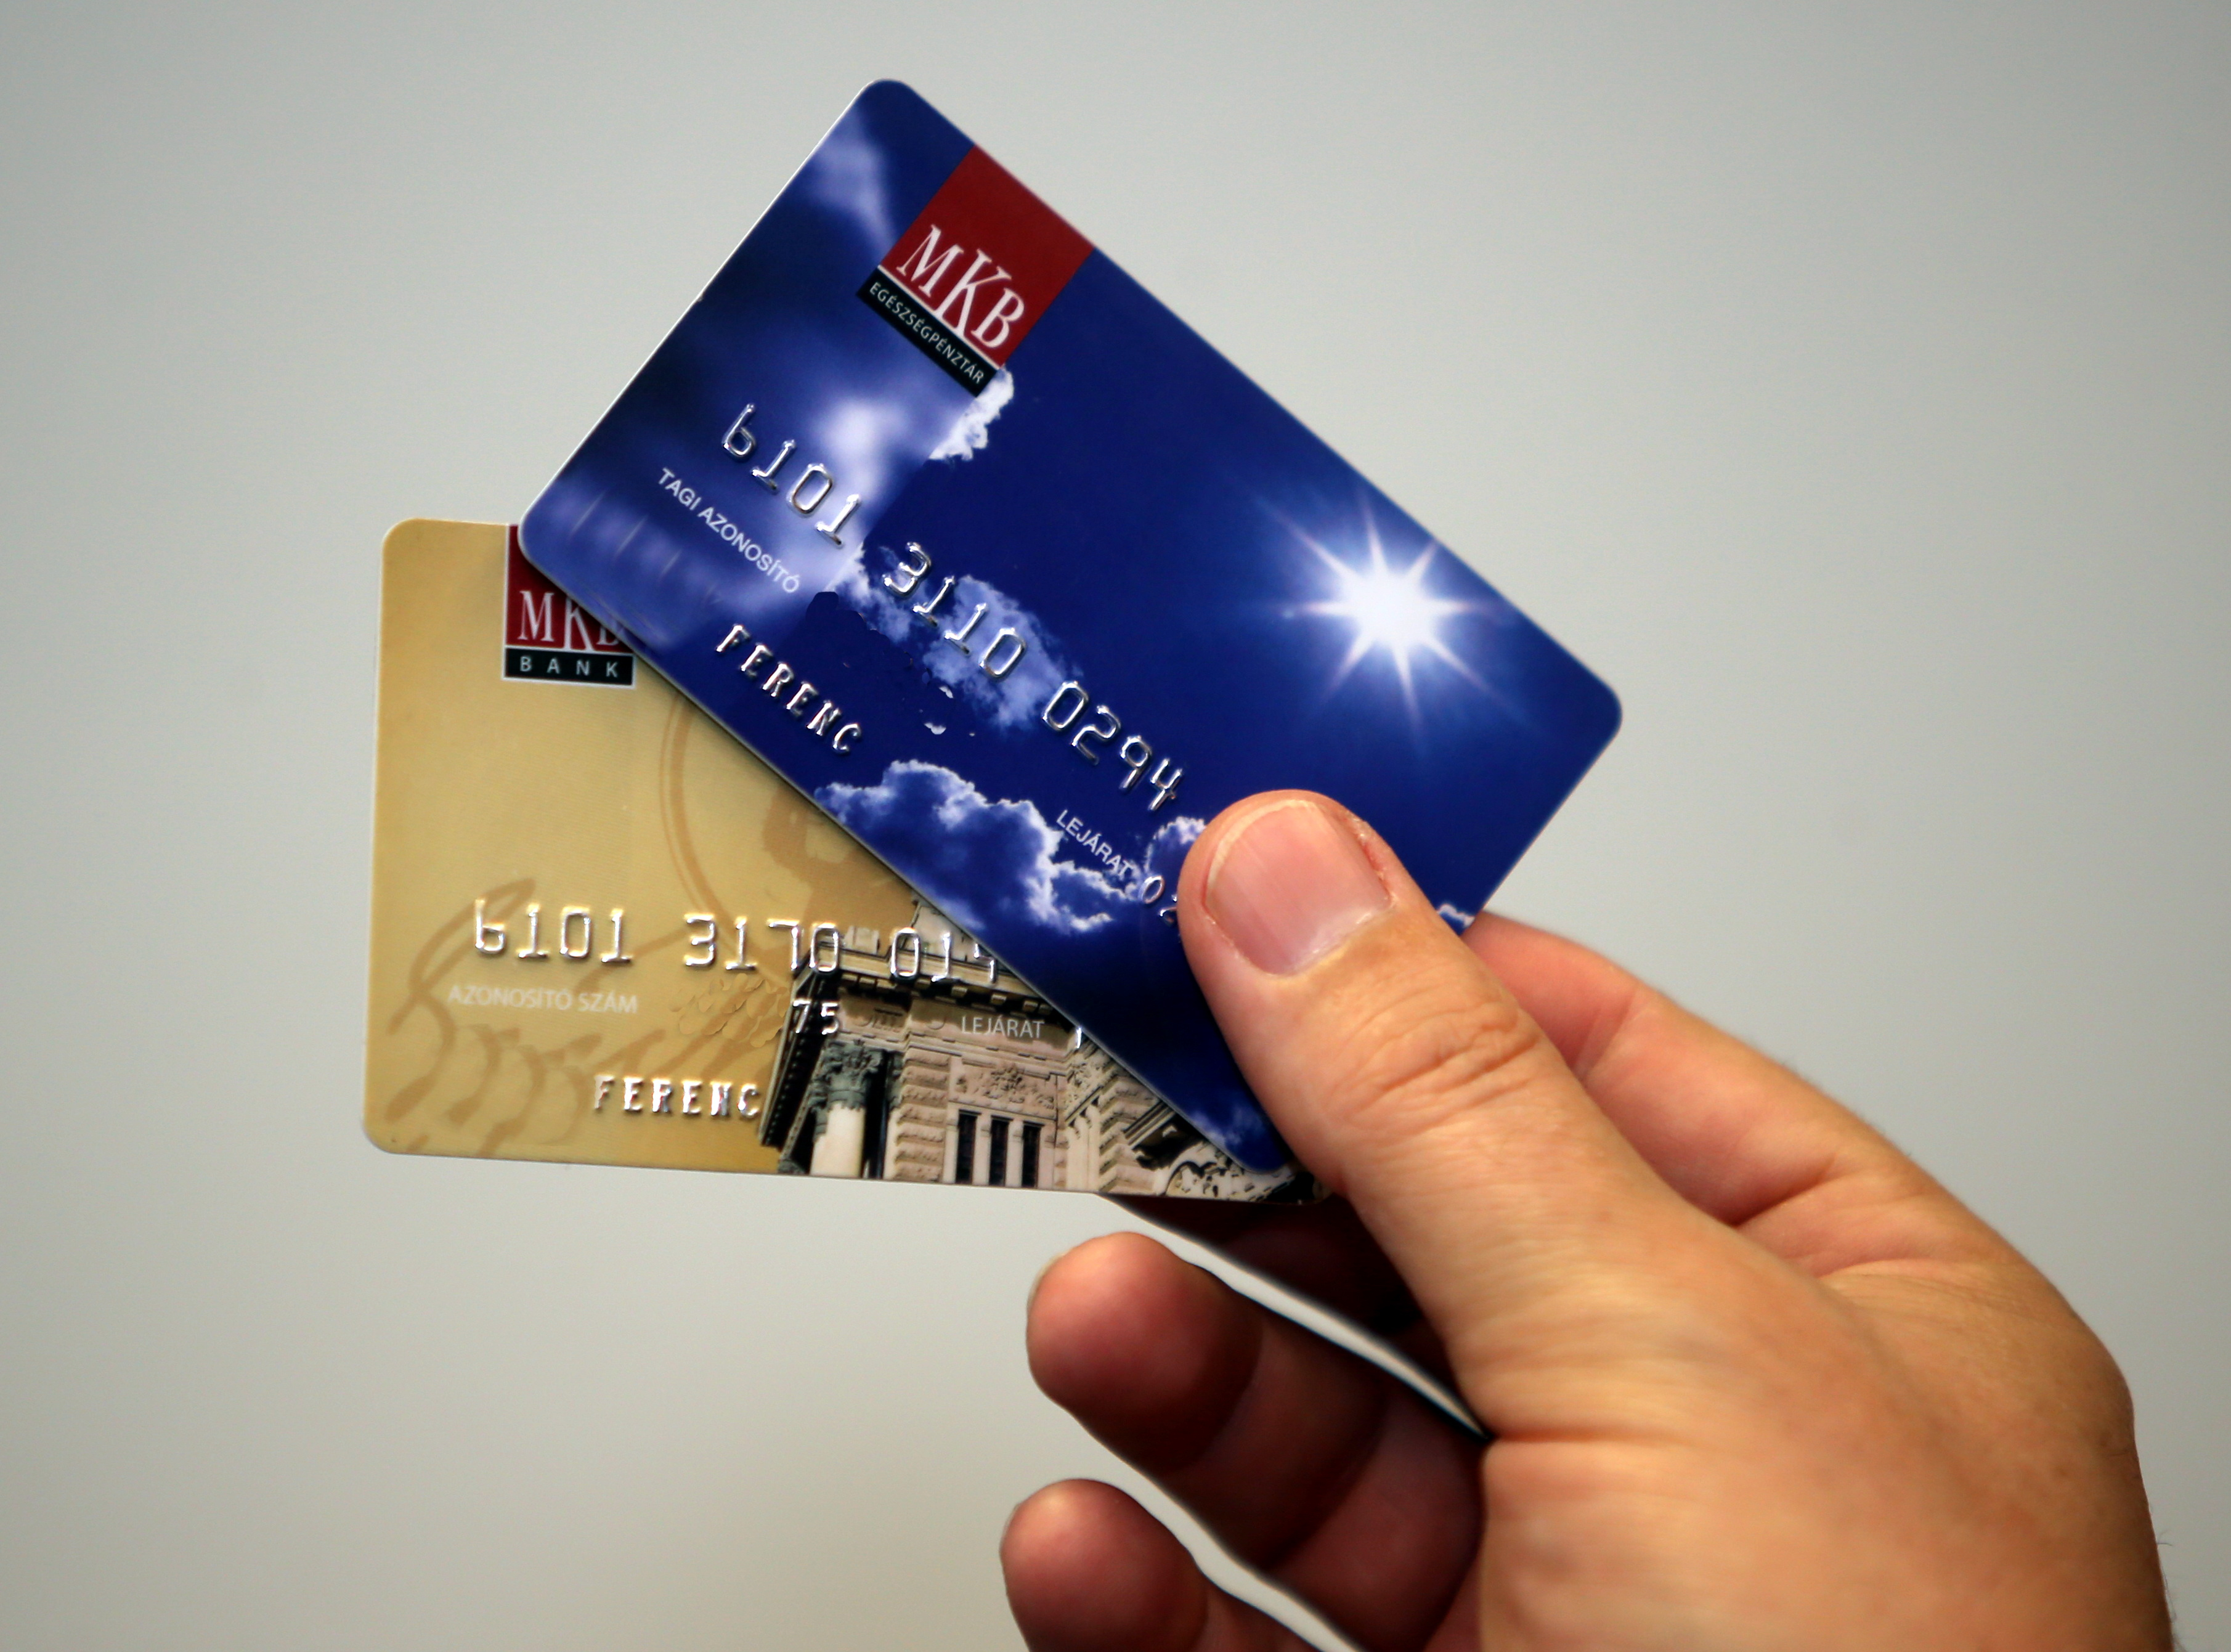 Névváltozás lesz az egyik bank SZÉP-kártyájánál - Blikk